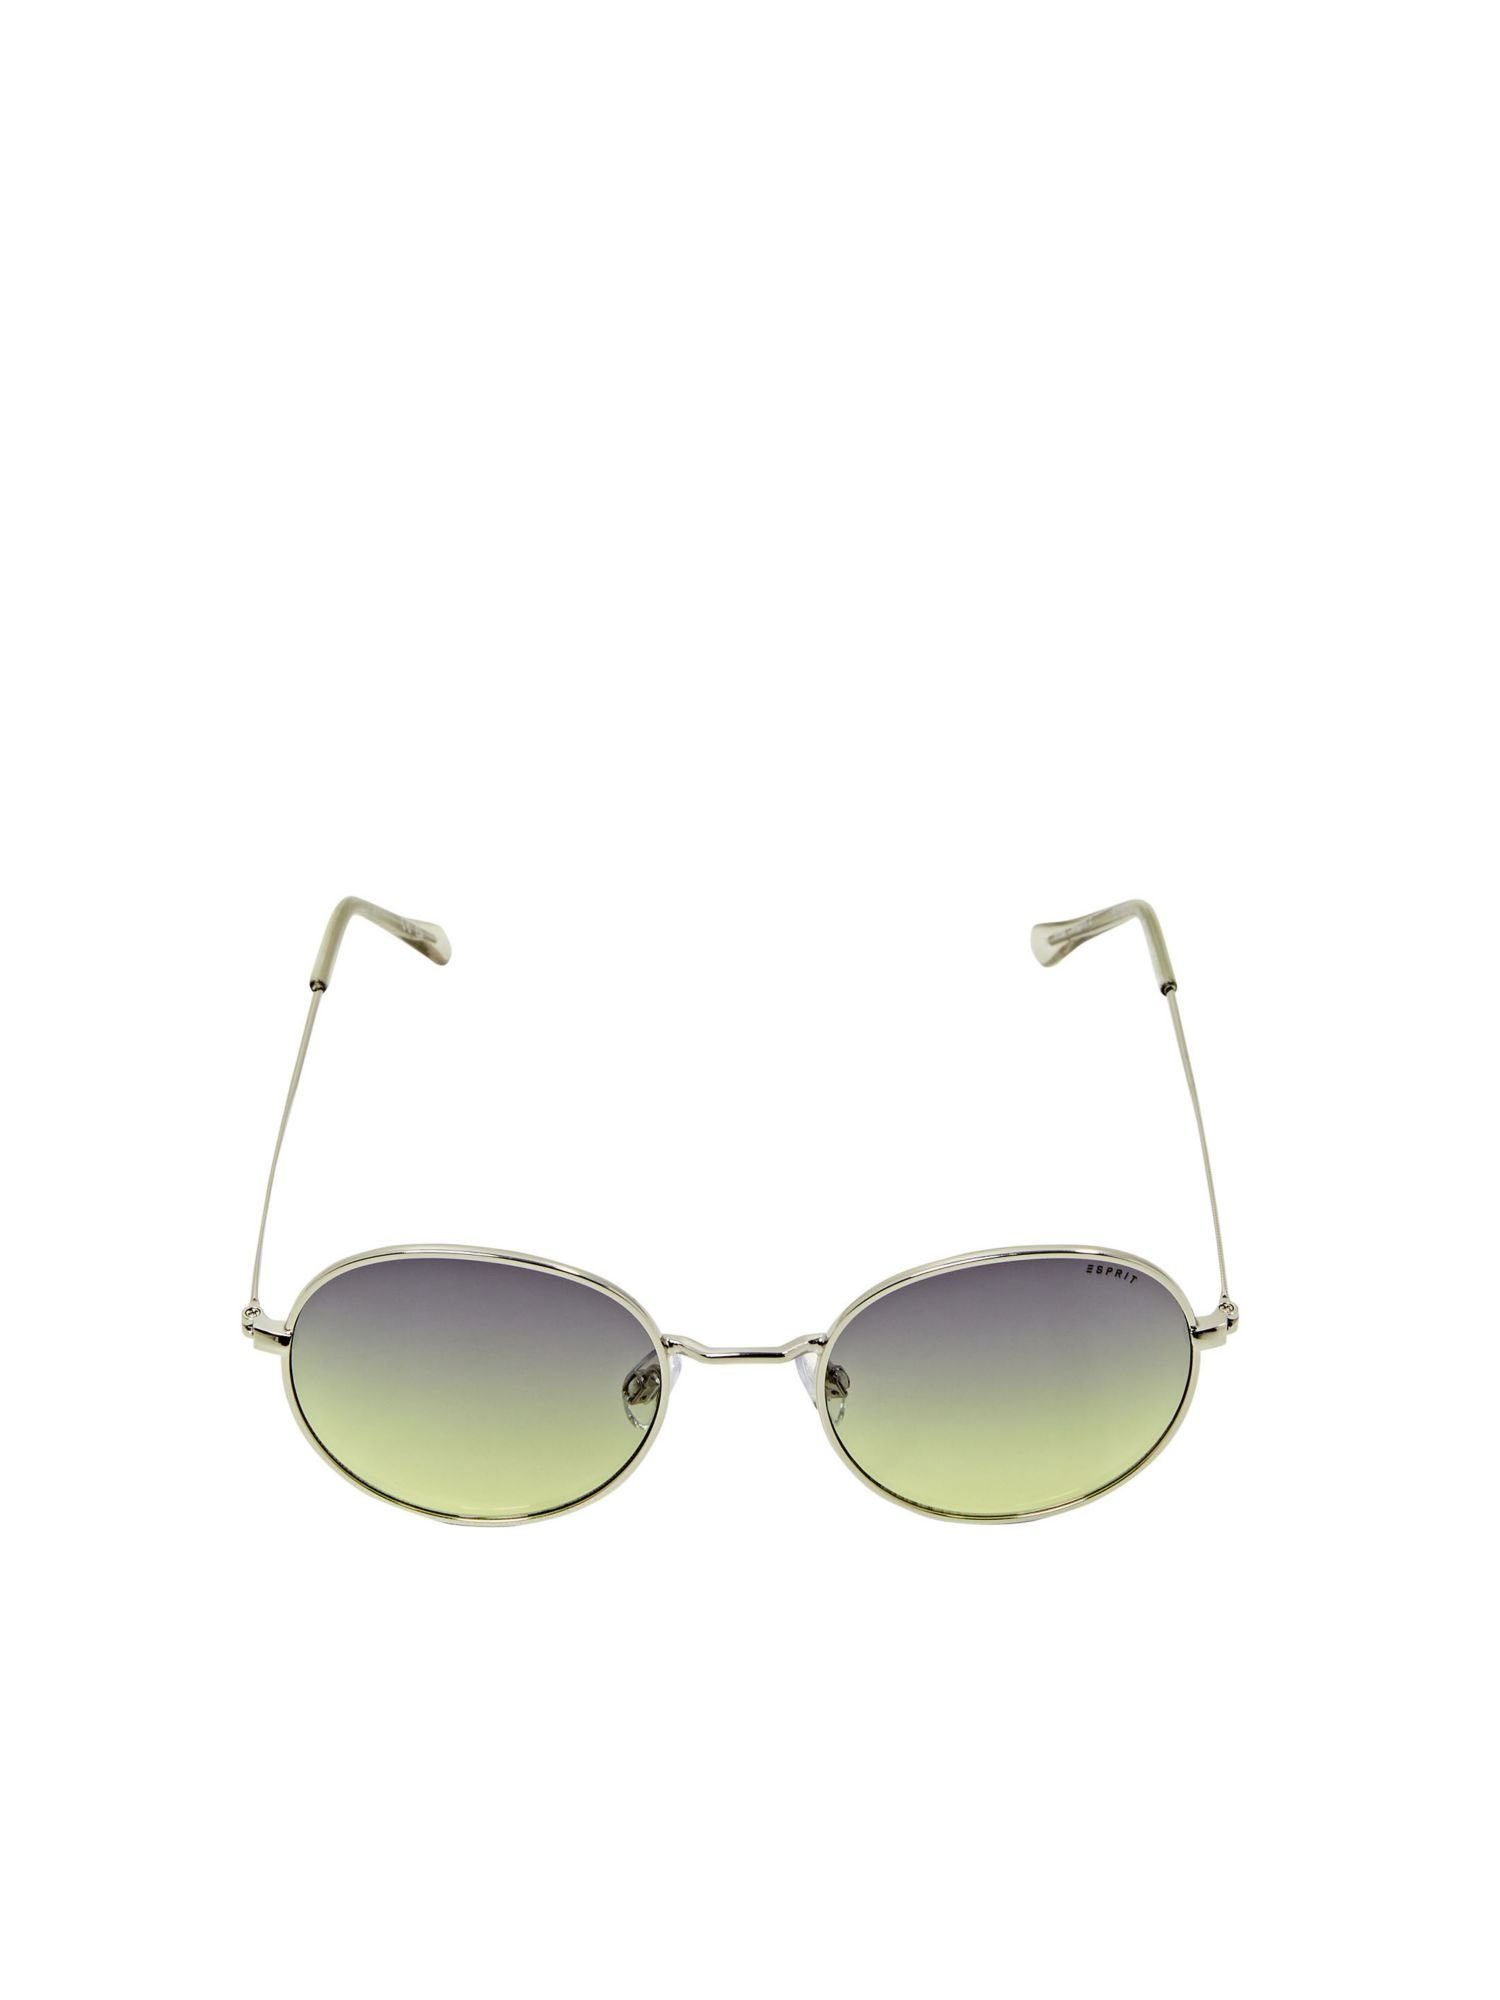 Runde silberne Sonnenbrillen online kaufen | OTTO